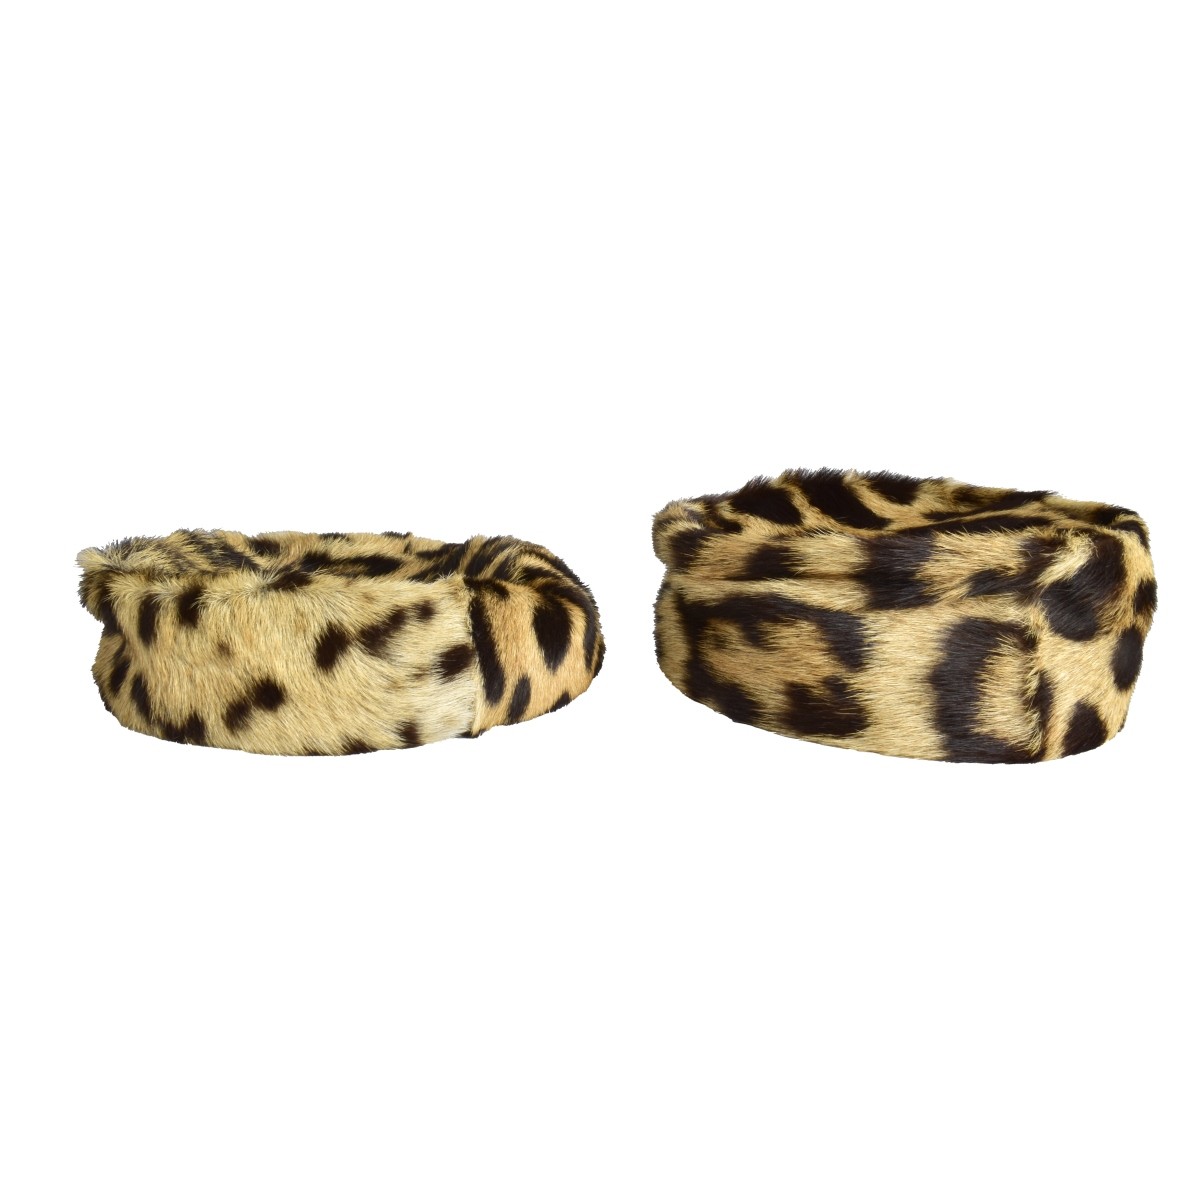 Two Genuine Leopard Skin Hats